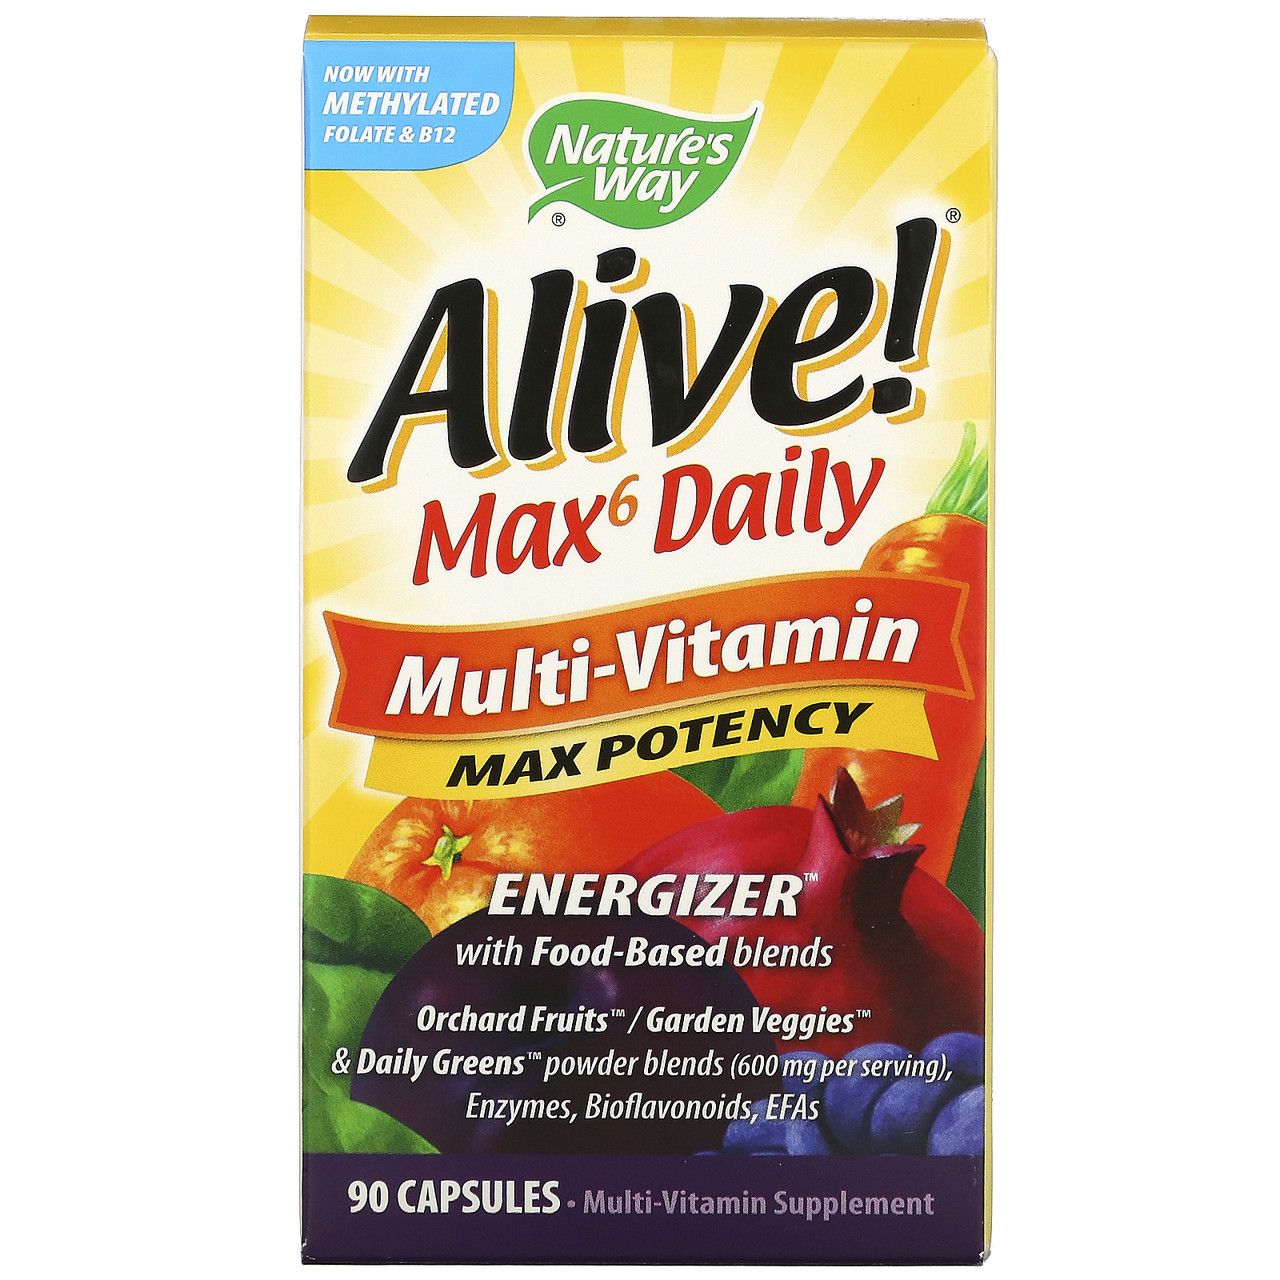 Мультивітамінний комплекс Alive! Max6 Daily, 90 рослинних капсул, Nature's Way